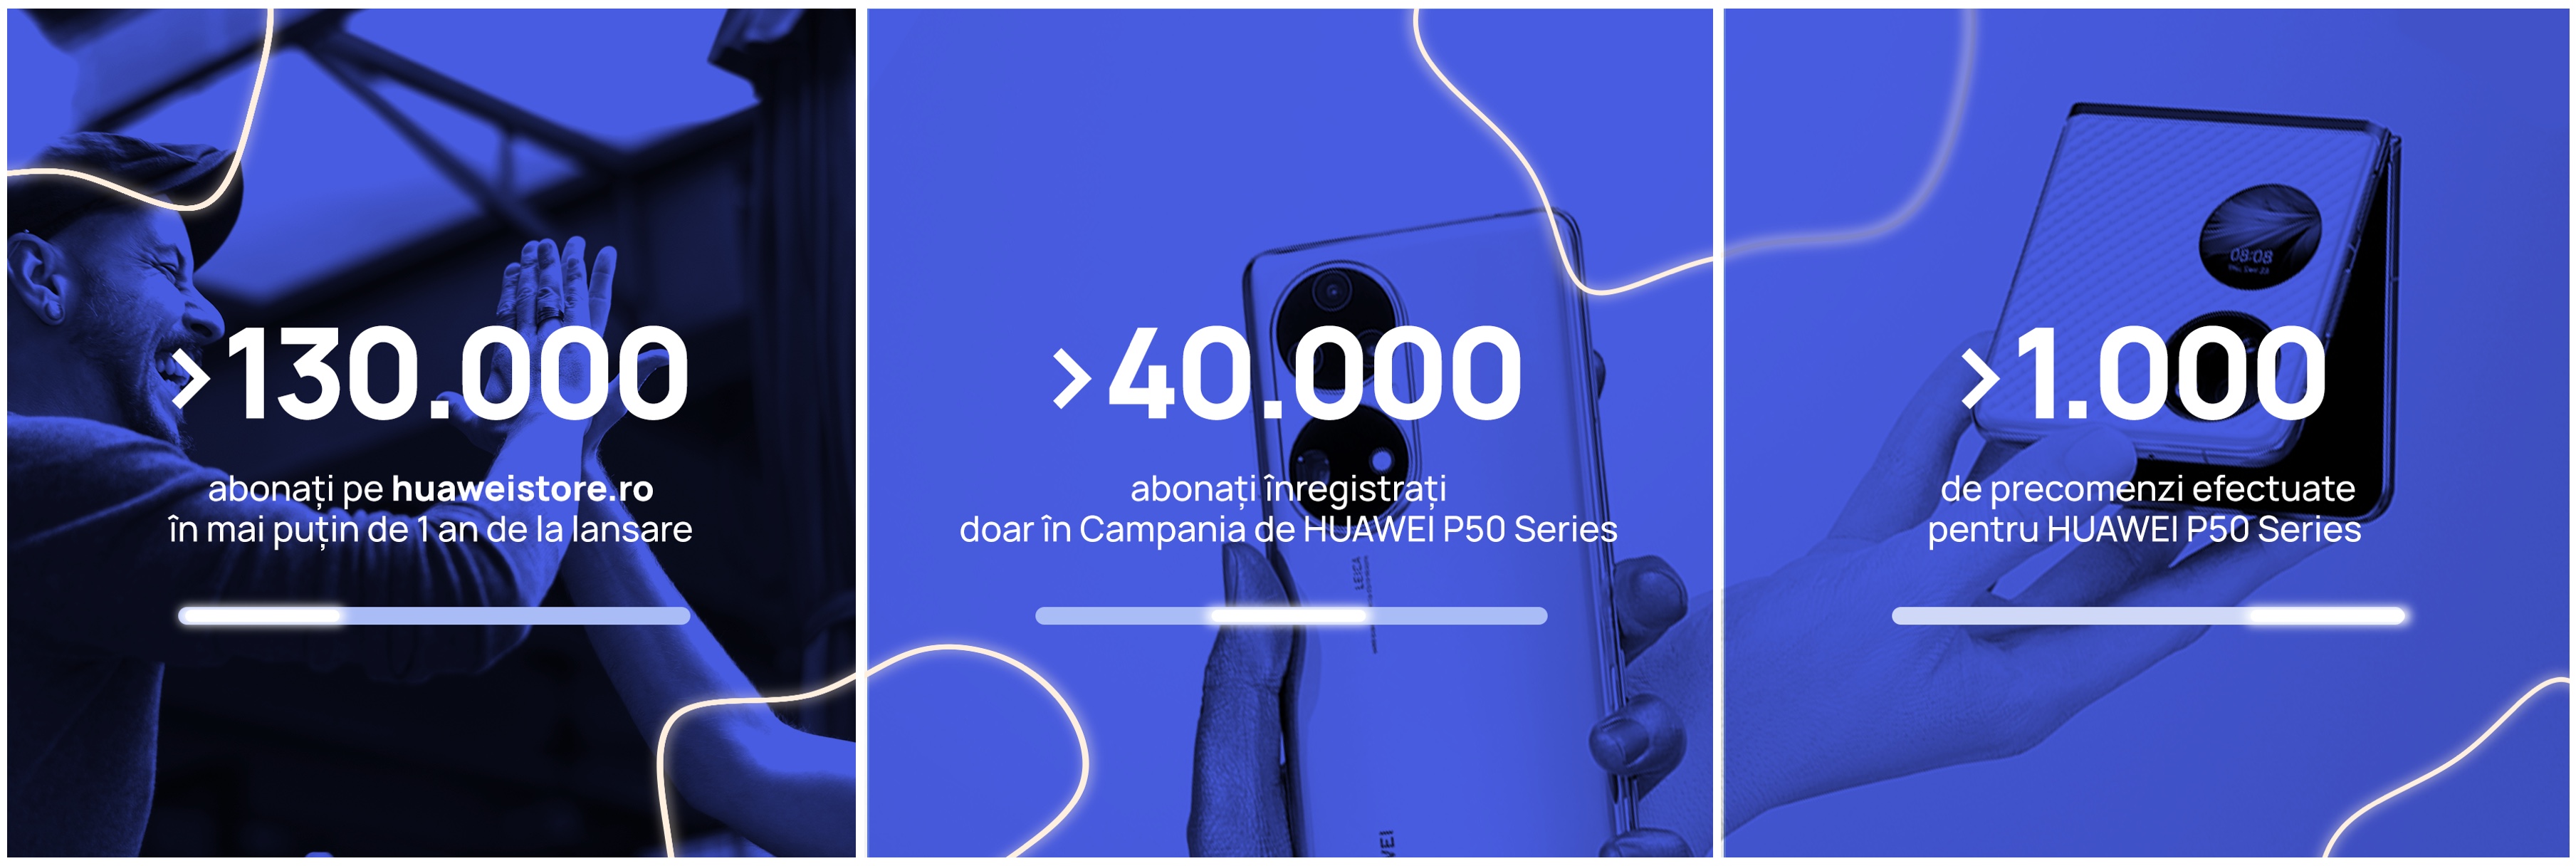 Peste 1.000 de precomenzi pentru cele mai noi smartphone-uri HUAWEI din familia P Series